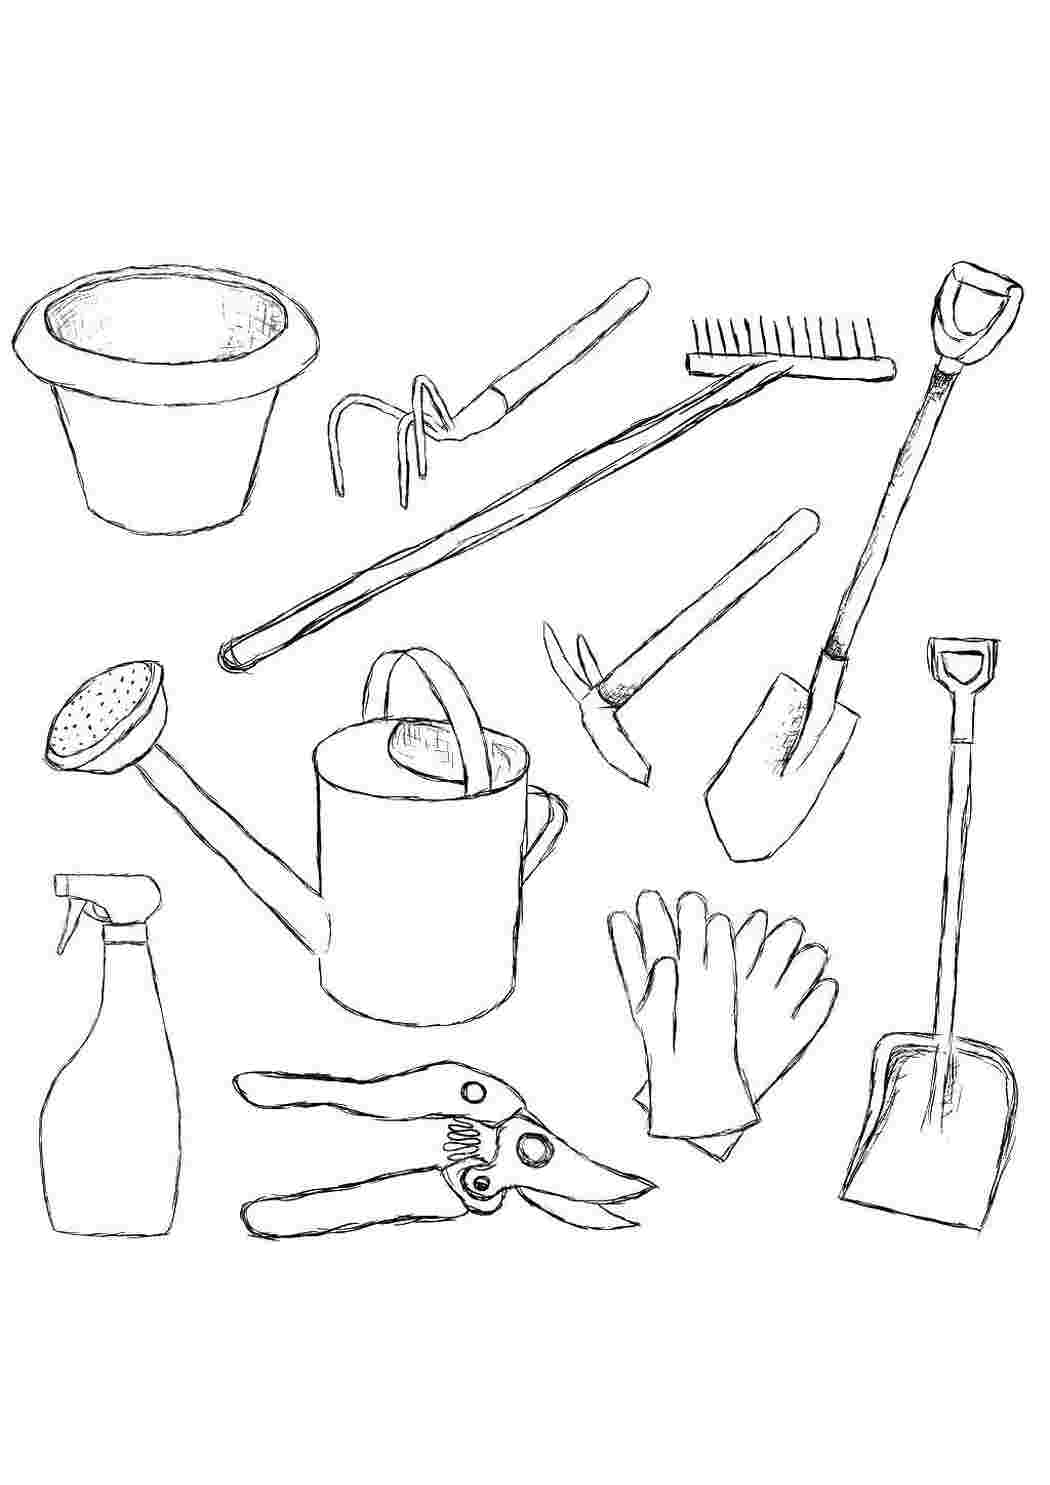 Раскраски Инструменты для сада инструменты сад, инструменты